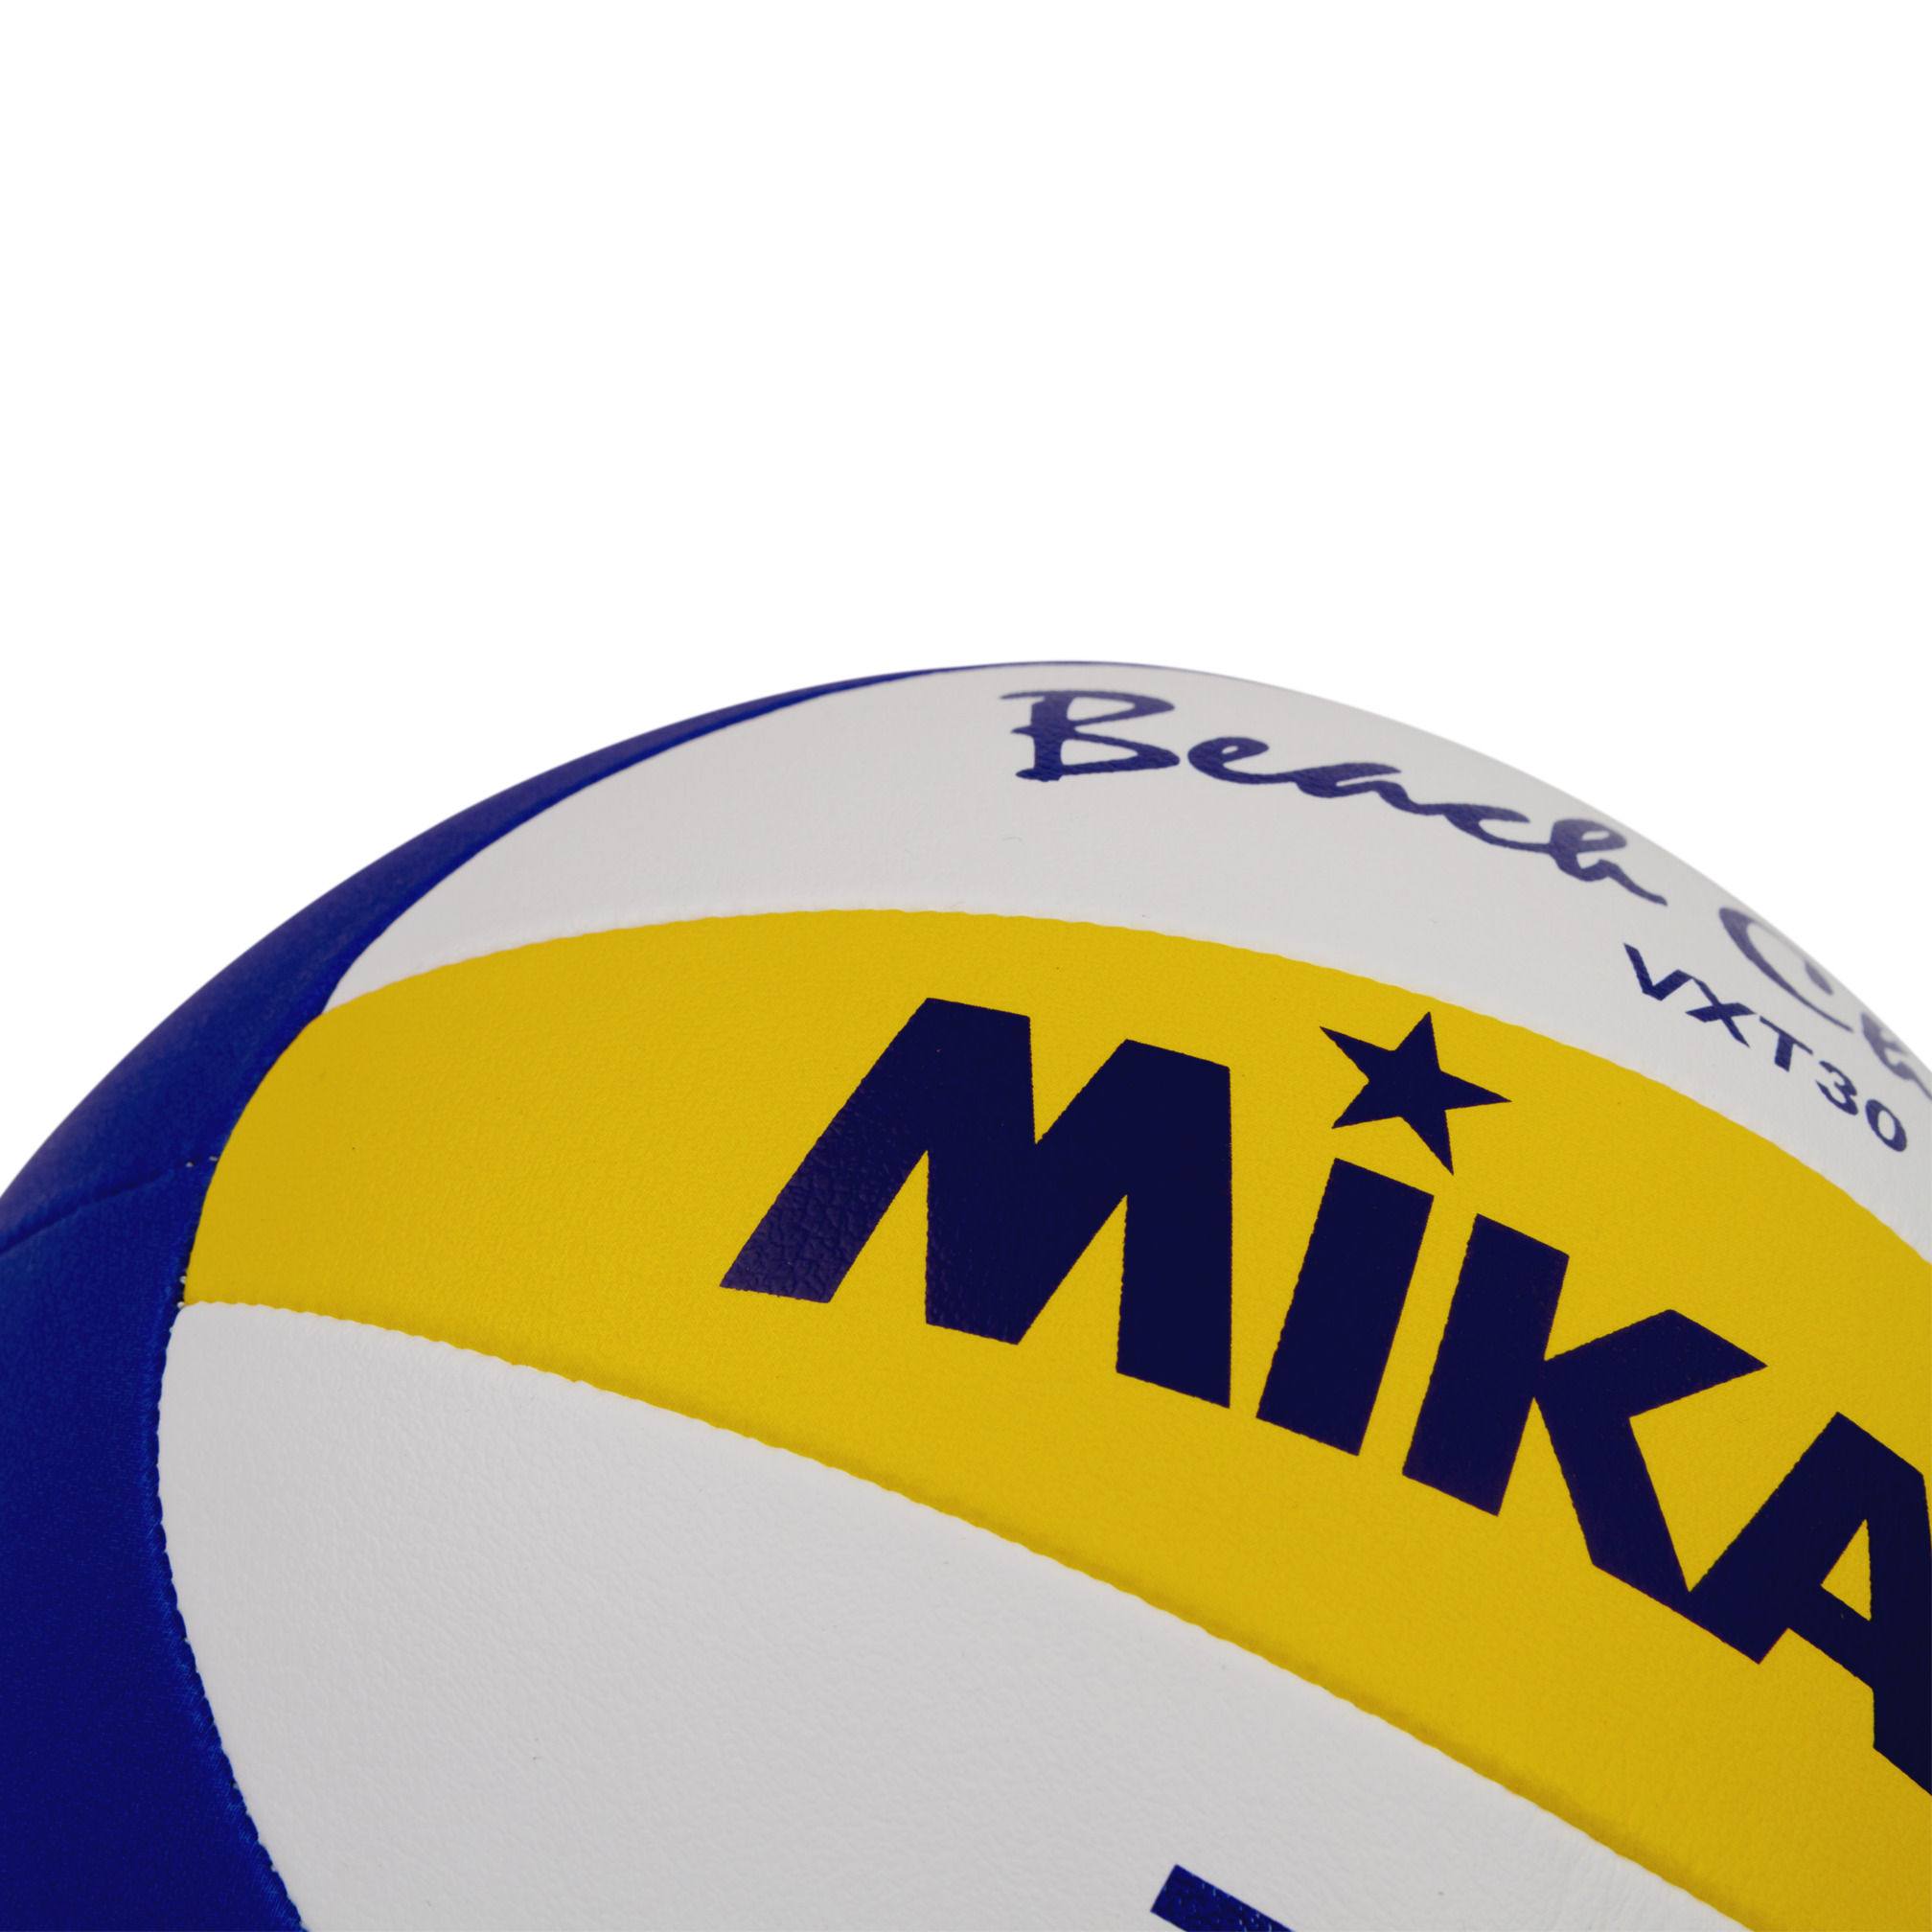 Ballon de beach-volley "Mikasa" Beach Champ VXT30, T5